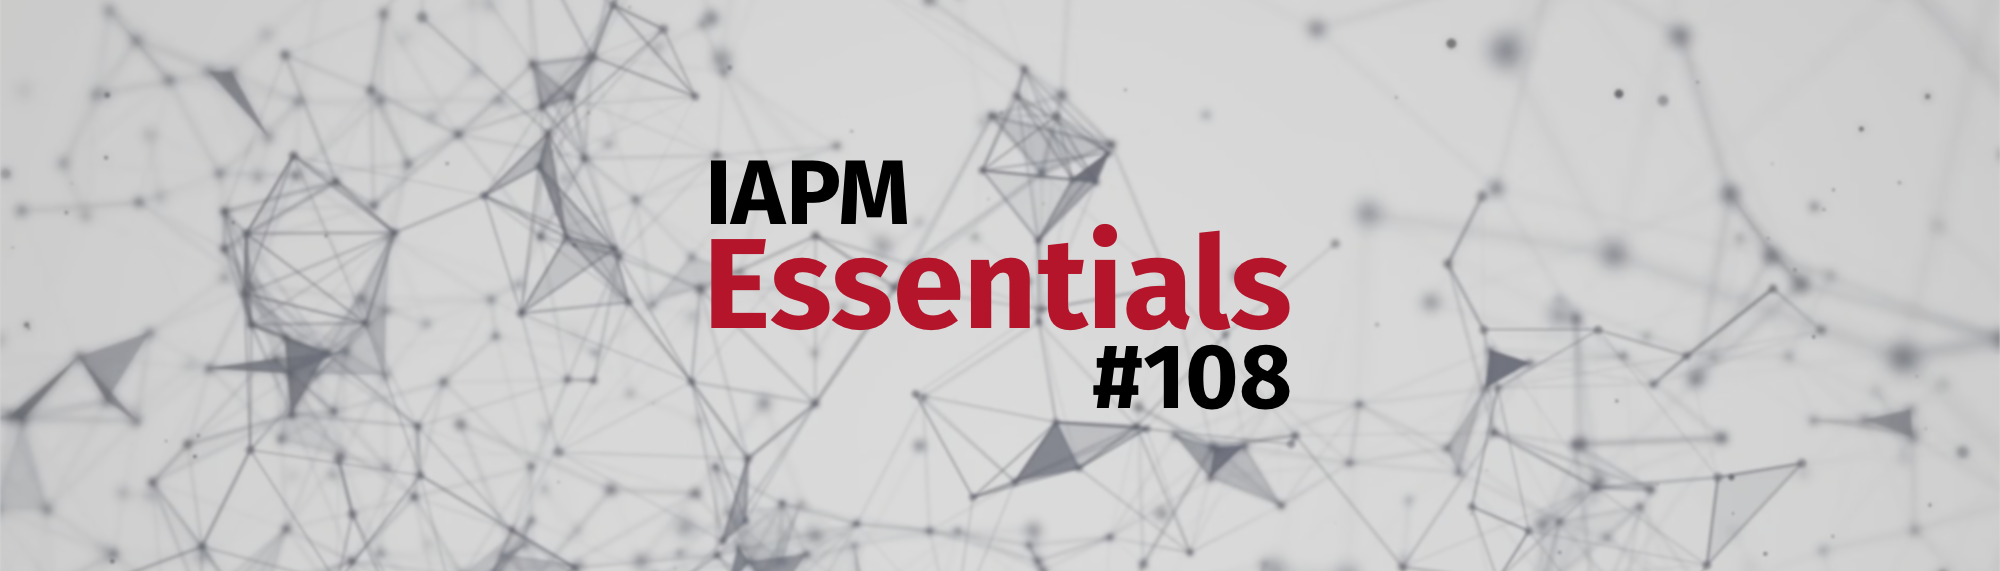 IAPM Essentials #108 - PM news | IAPM